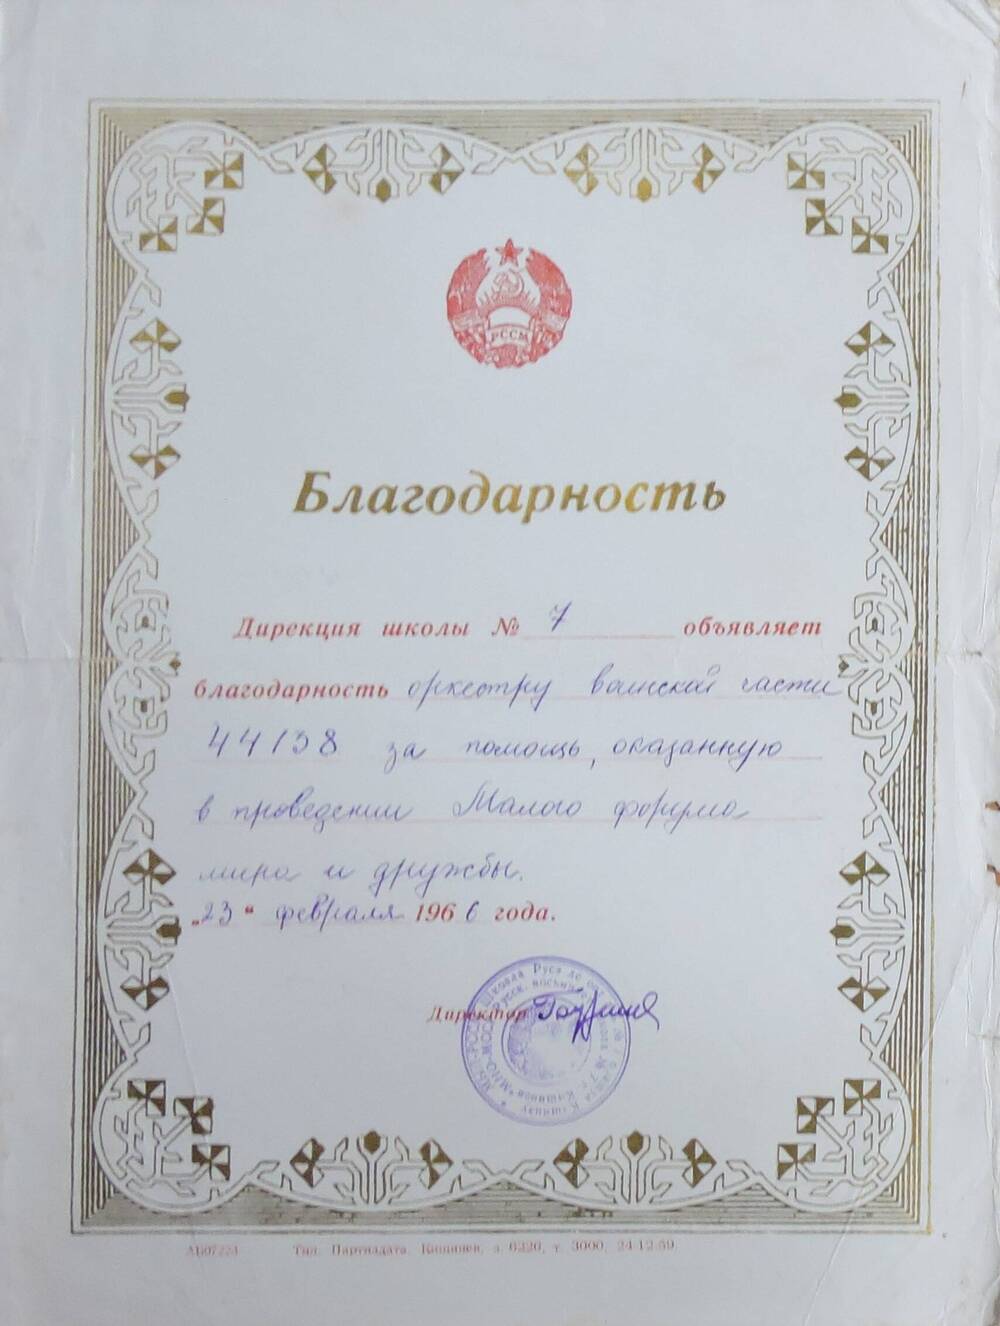 Благодарность  оркестру воинской части 44138 от дирекции школы  № 7 (Маслову Игорю Ивановичу)